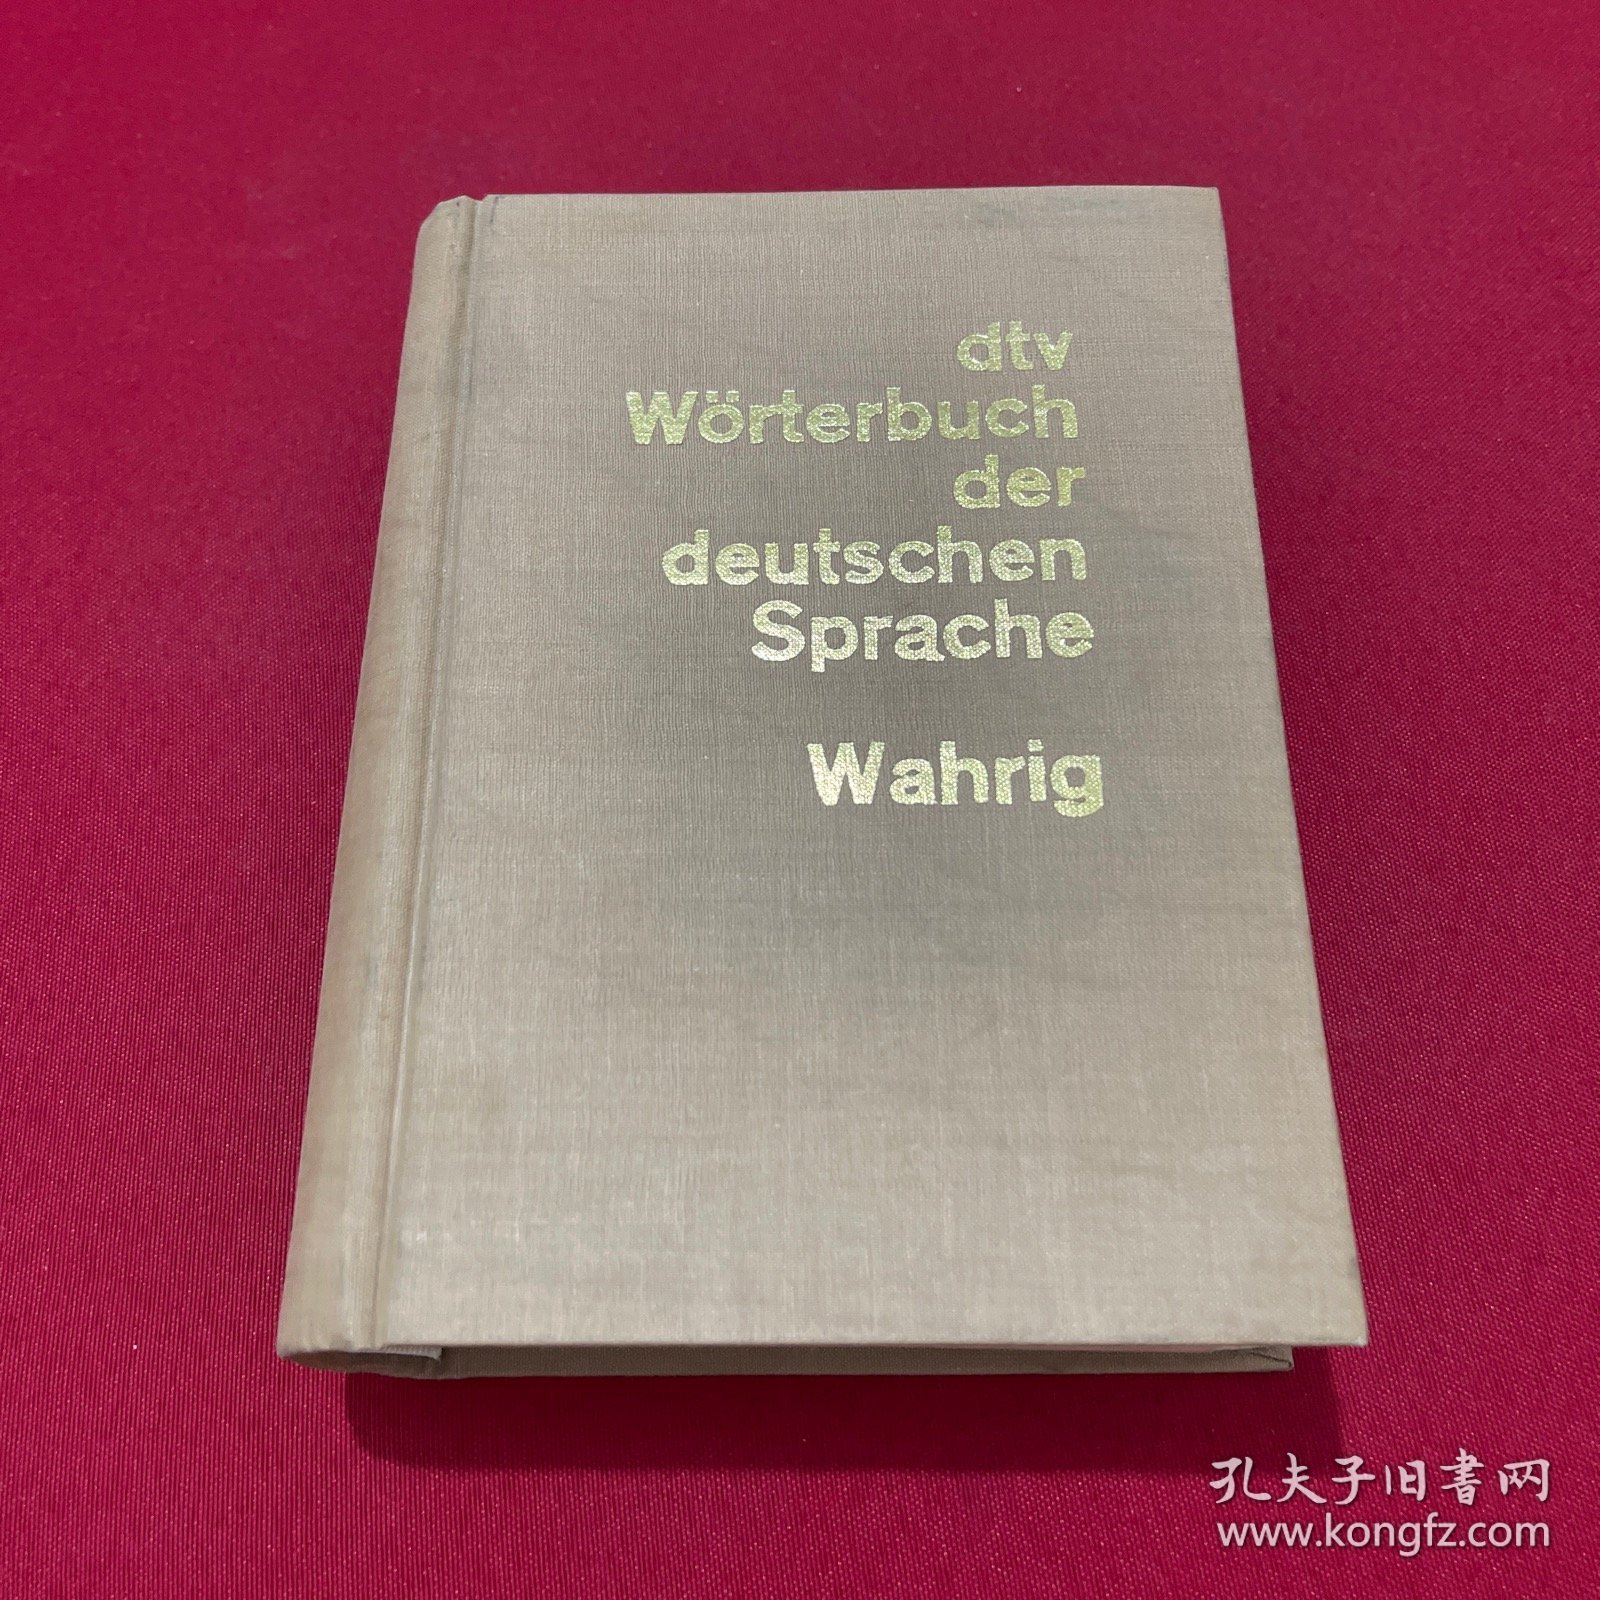 dtv worterbuch der deutschen Sprache Wahrig： 德语词典 精装本